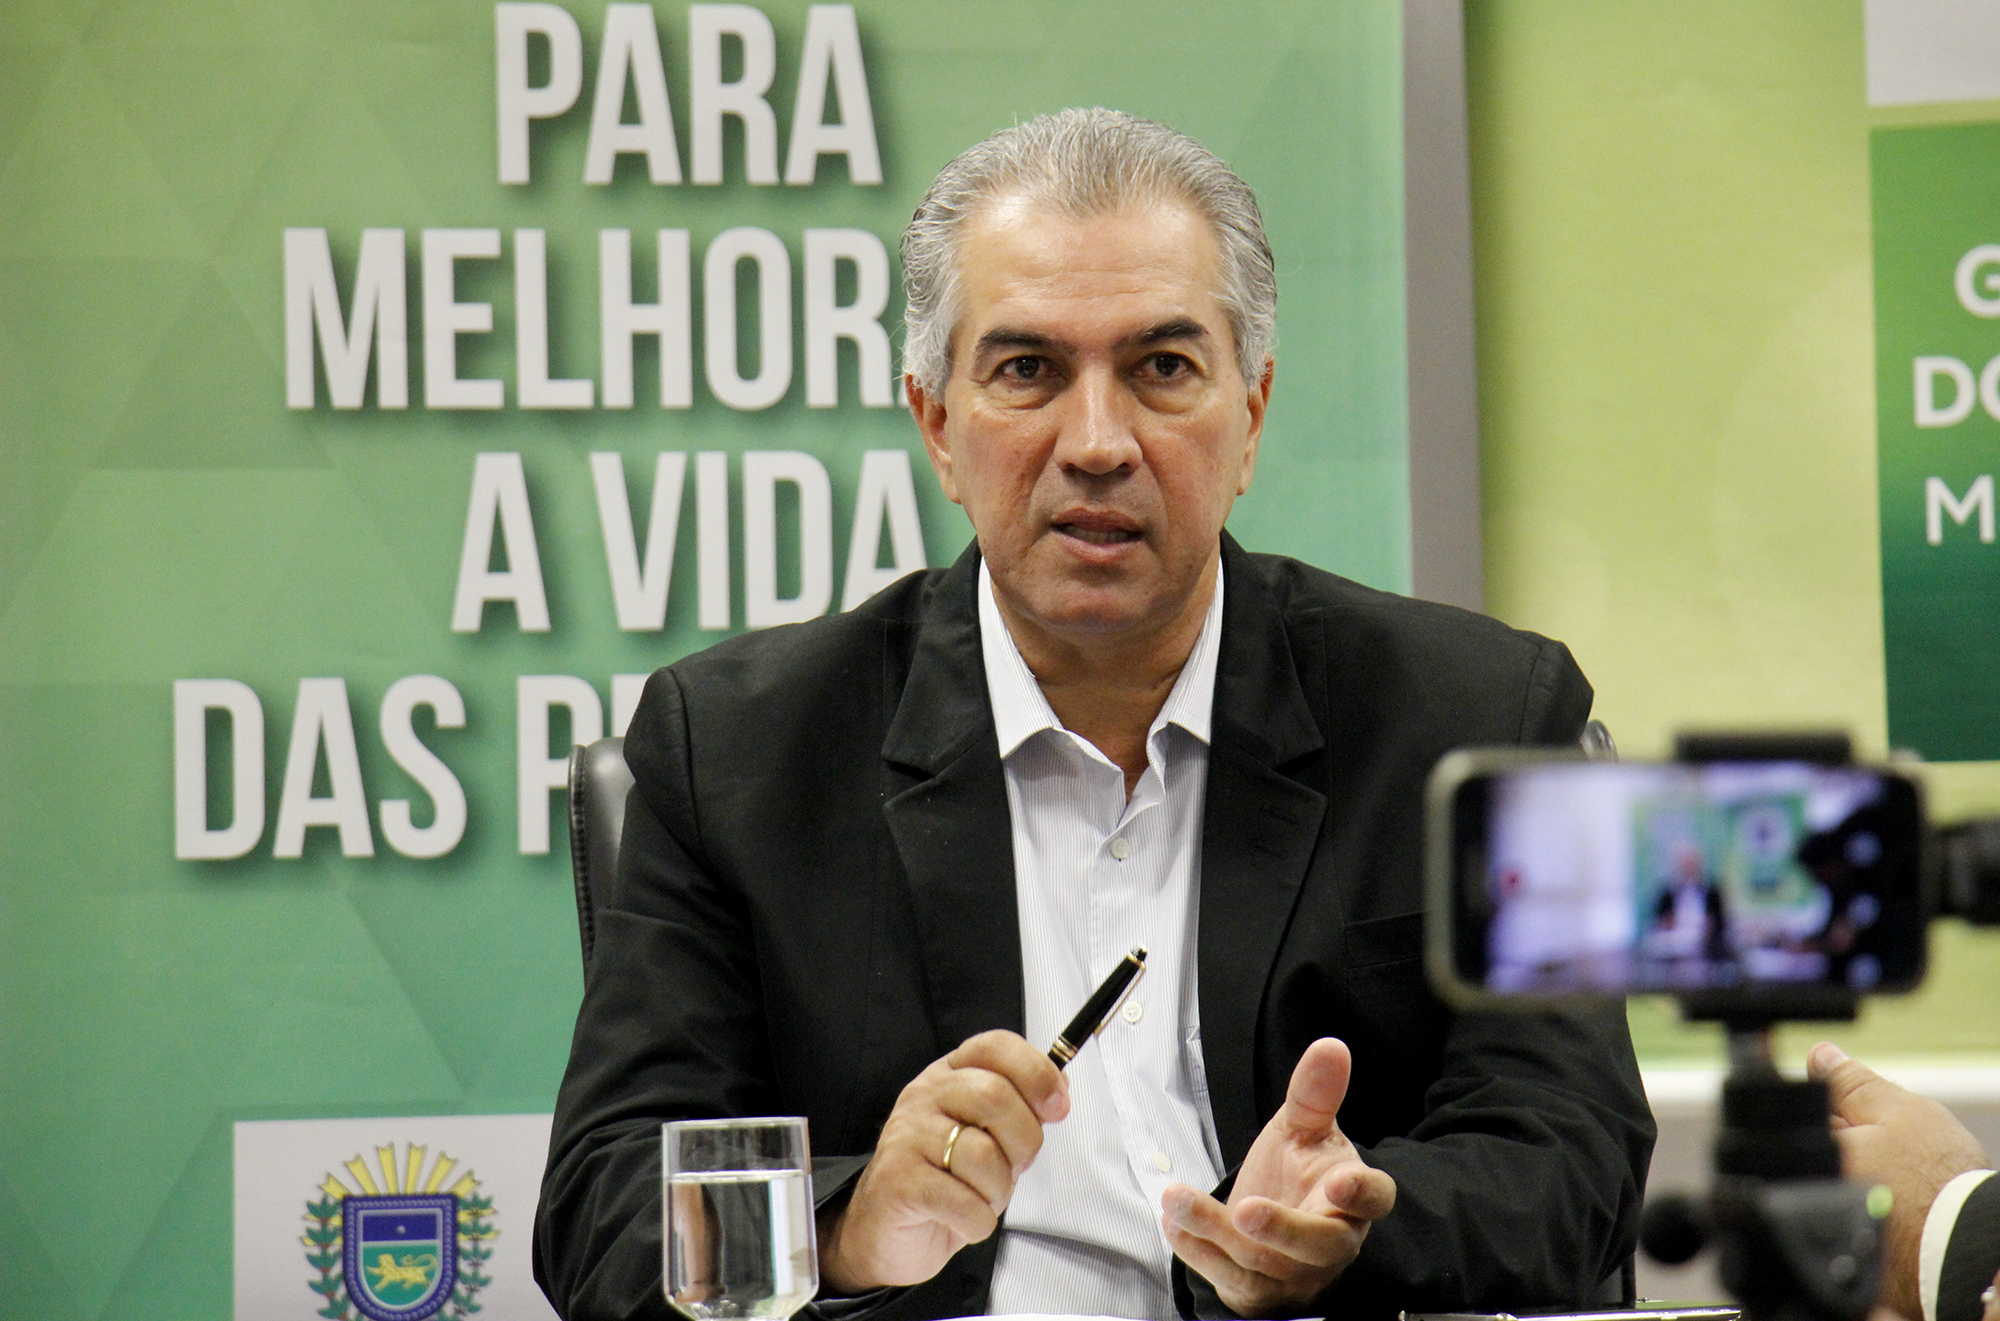 Reinaldo Azambuja sanciona Semana do Economista e Dia de Conscientização da Fibromialgia